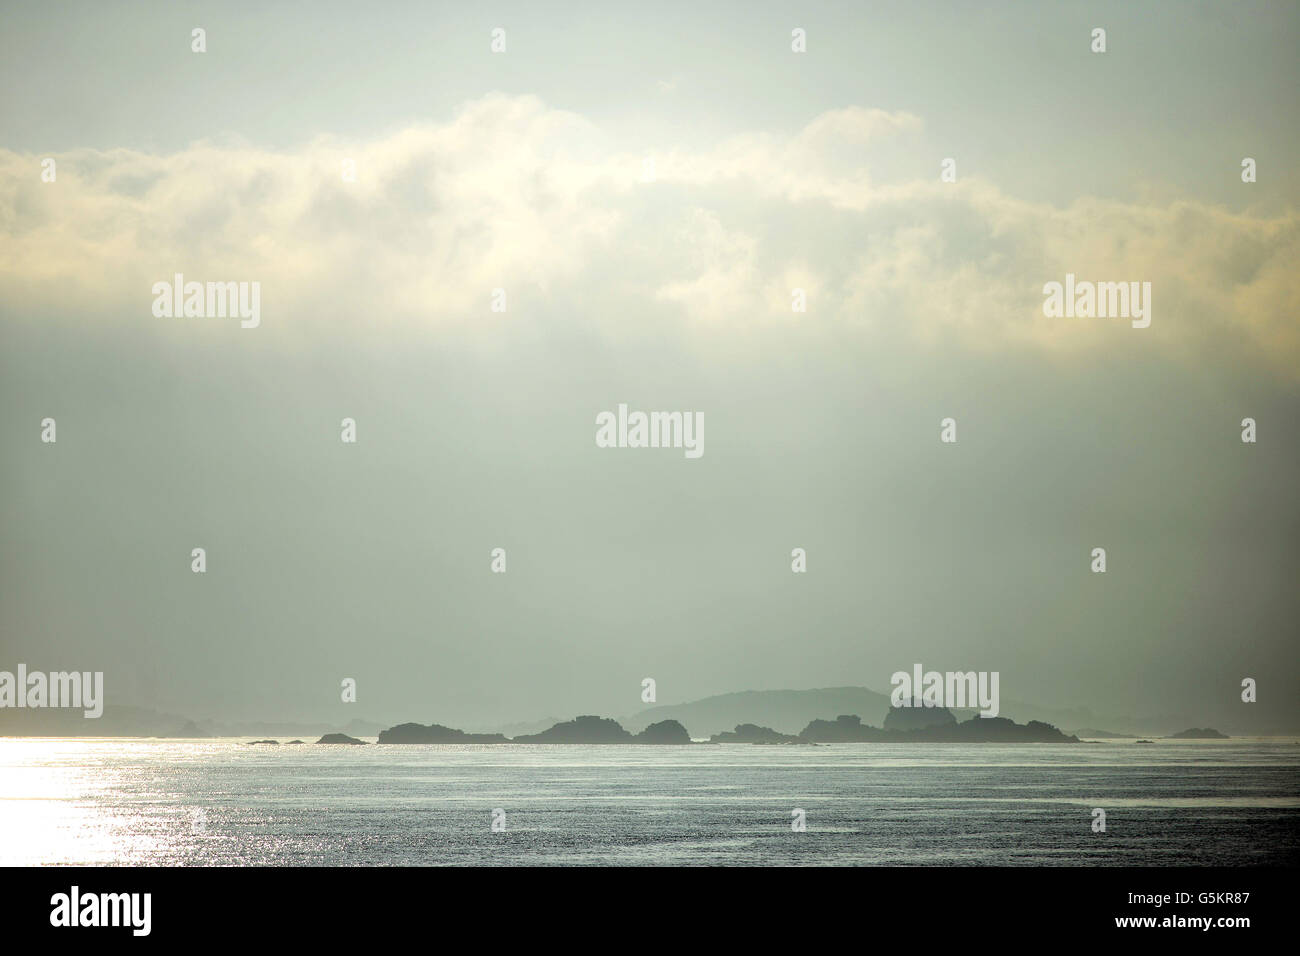 La mattina presto isolette rocciose nelle isole Scilly REGNO UNITO Foto Stock